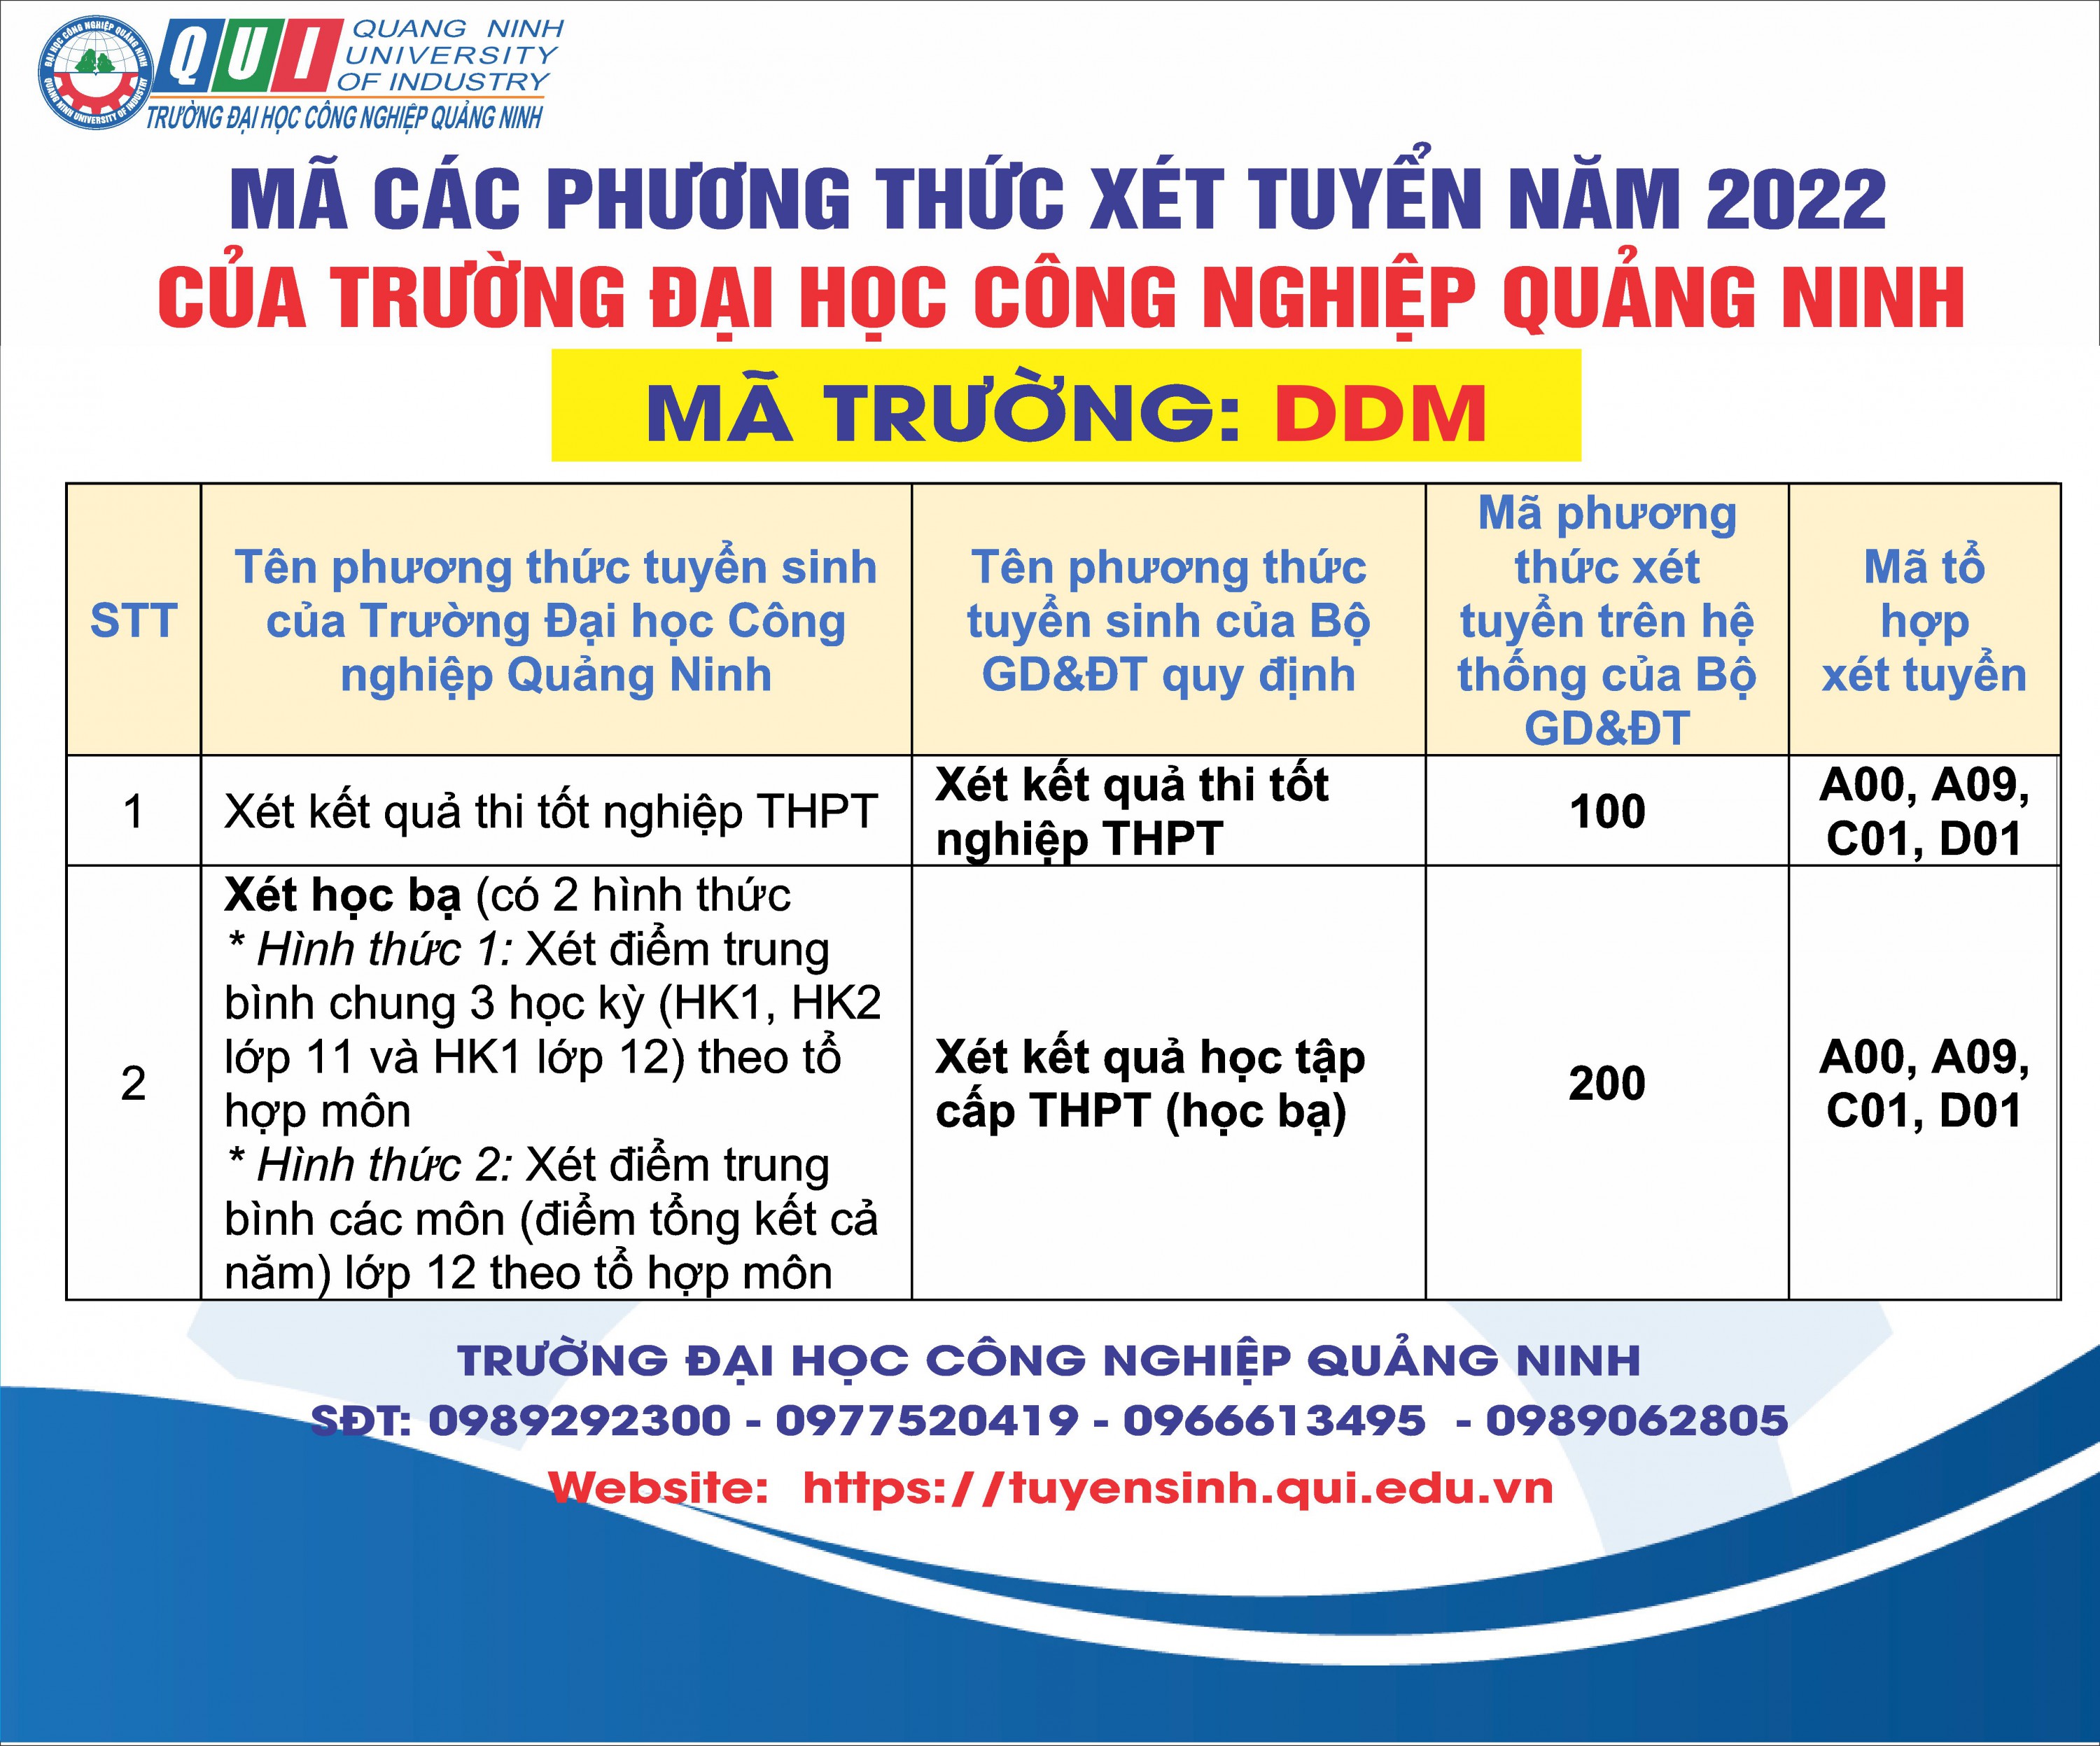 Mã các phương thức xét tuyển năm 2022 trường Đại học Công nghiệp Quảng Ninh